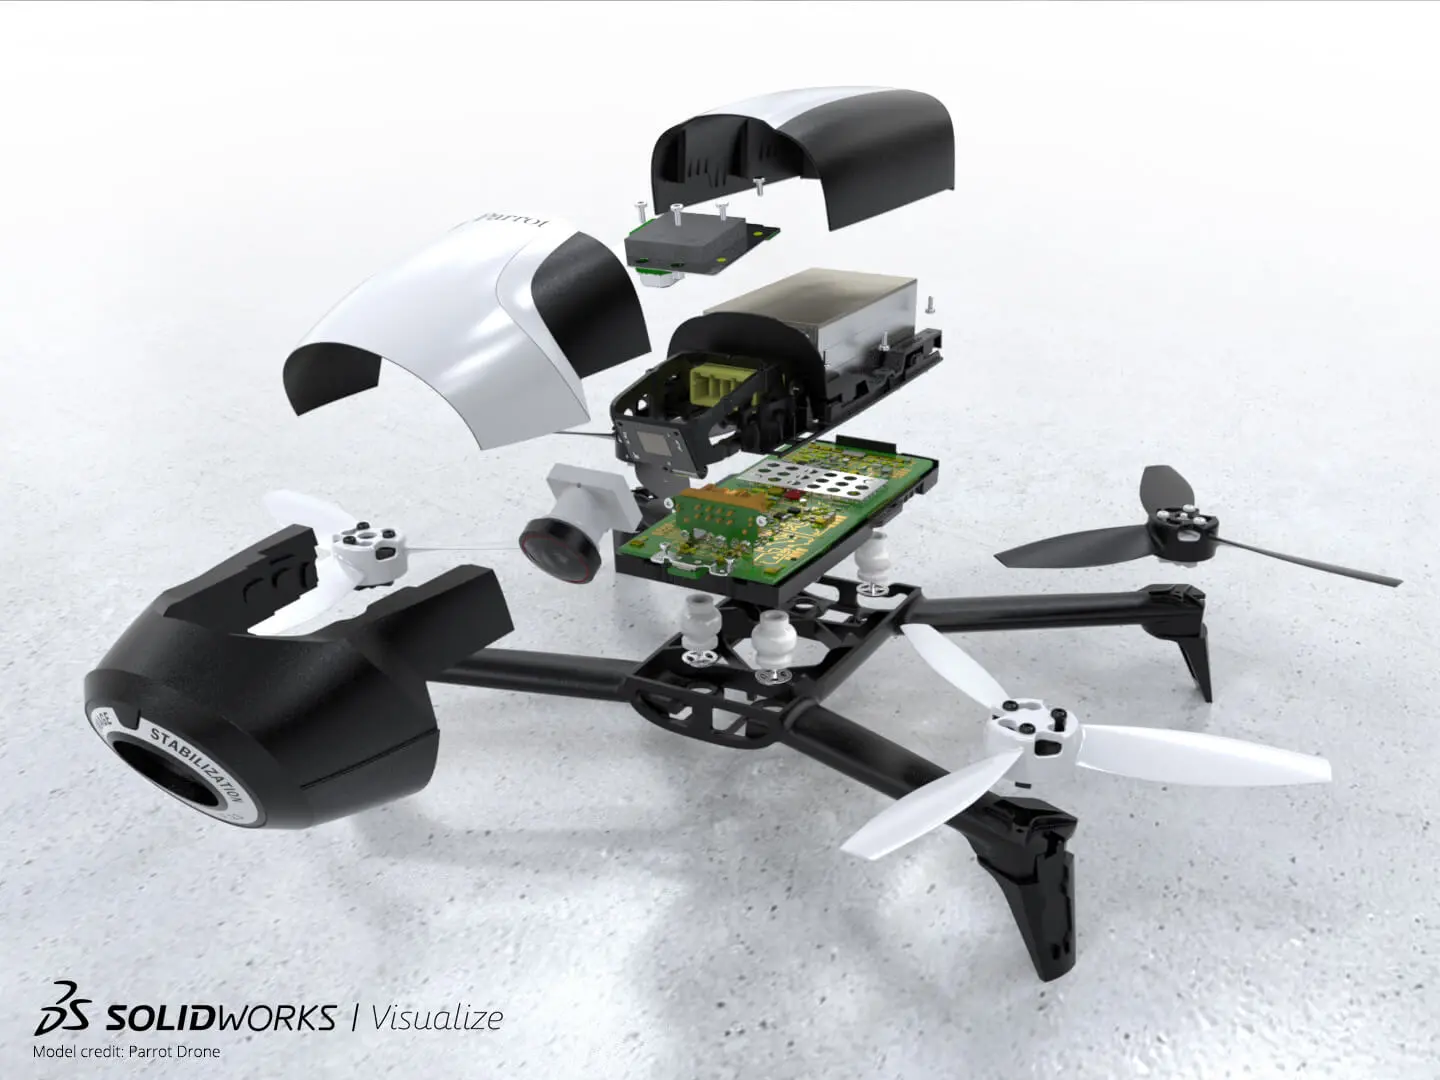 Zerlegte Drohne mit SOLIDWORKS Visualize gerendert.